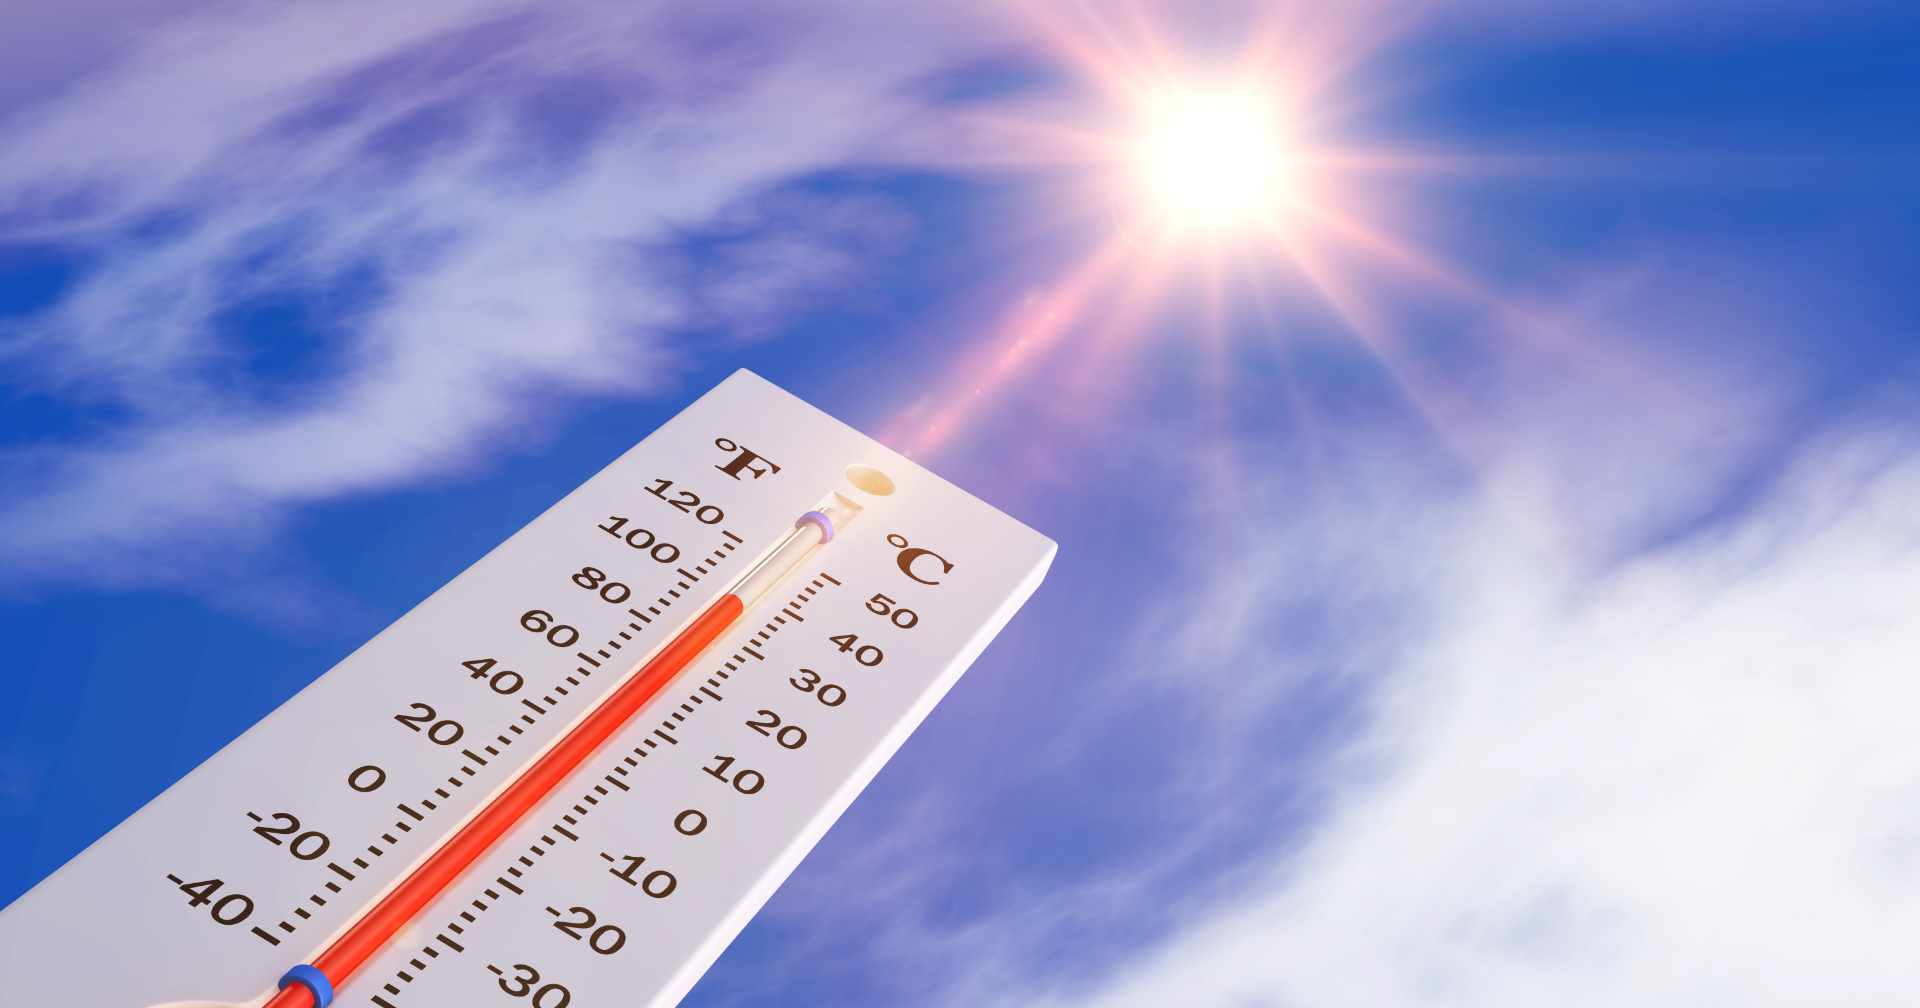 ร้อนกว่าปีที่แล้ว! กรมอุตุฯ คาดฤดูร้อนนี้อุณหภูมิสูงสุด 43 องศาเซลเซียส